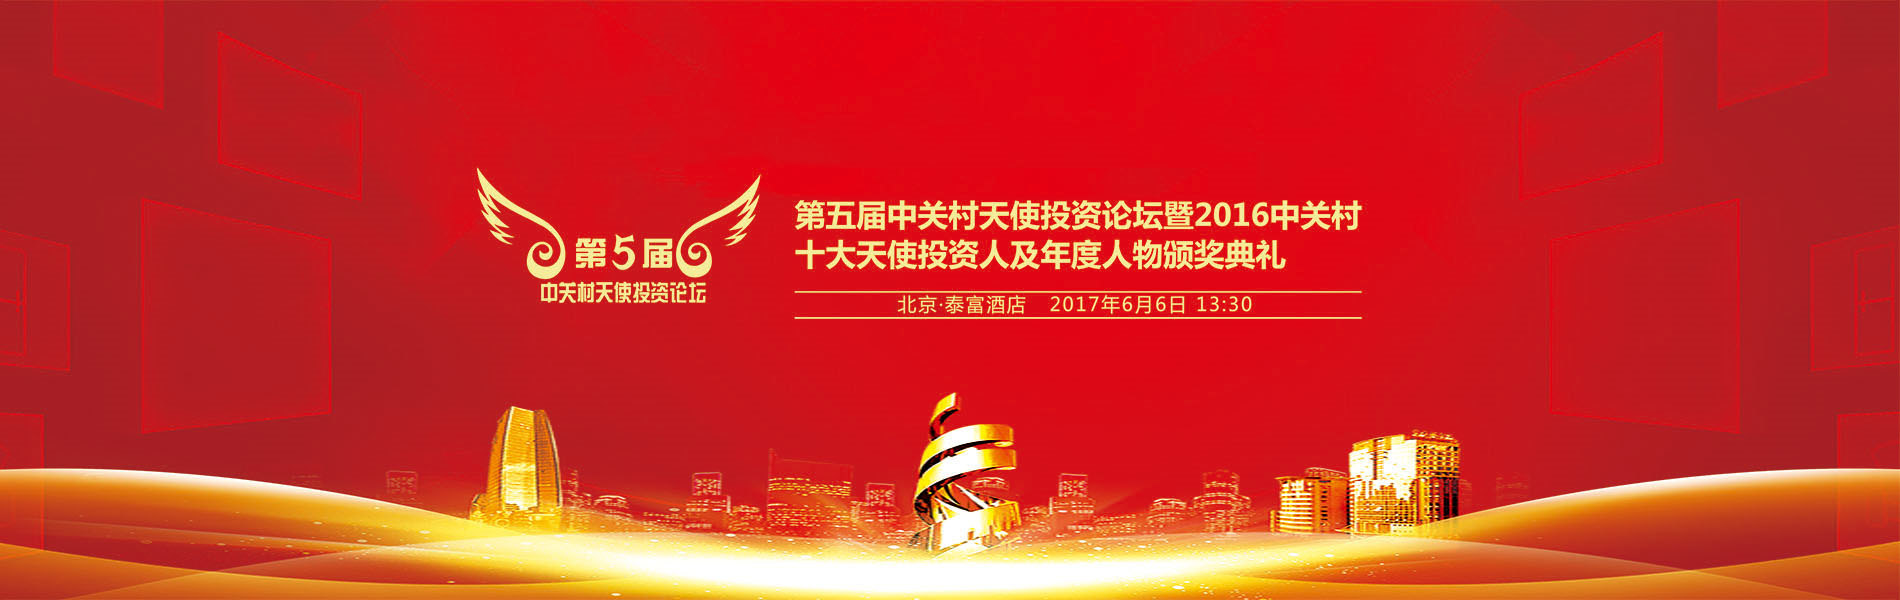 2016中国文化娱乐产业投资峰会